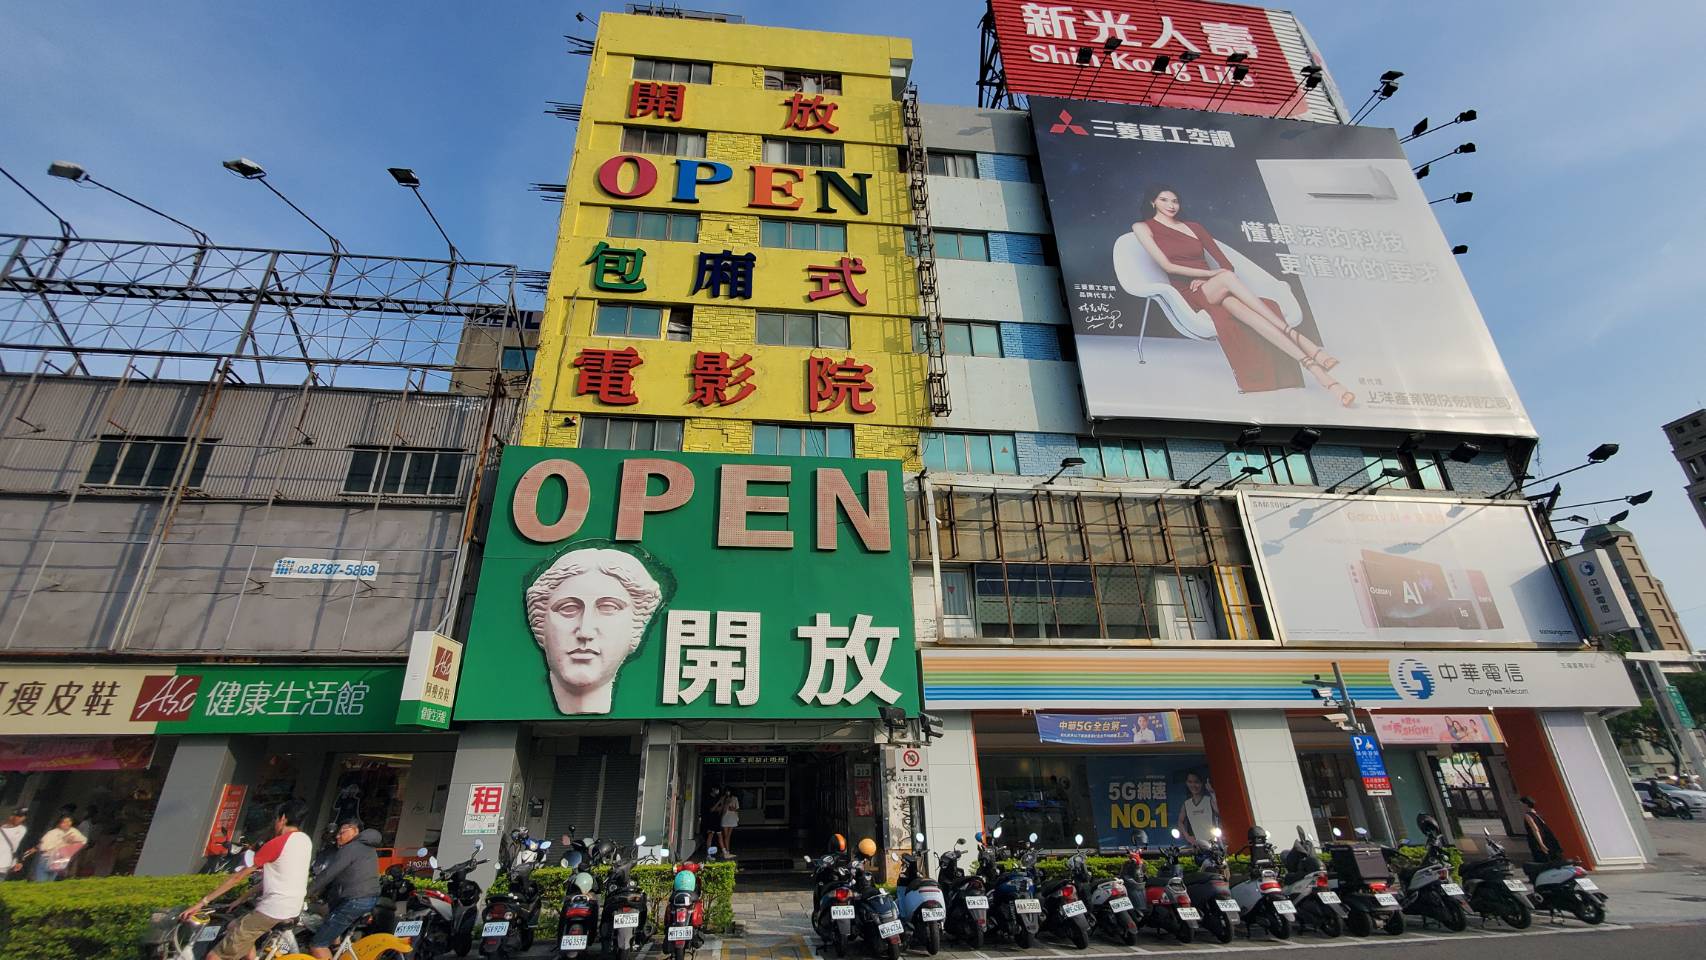 「开放电影院」建筑物的黄色涂漆搭配绿色招牌相当显眼。记者王勇超／摄影